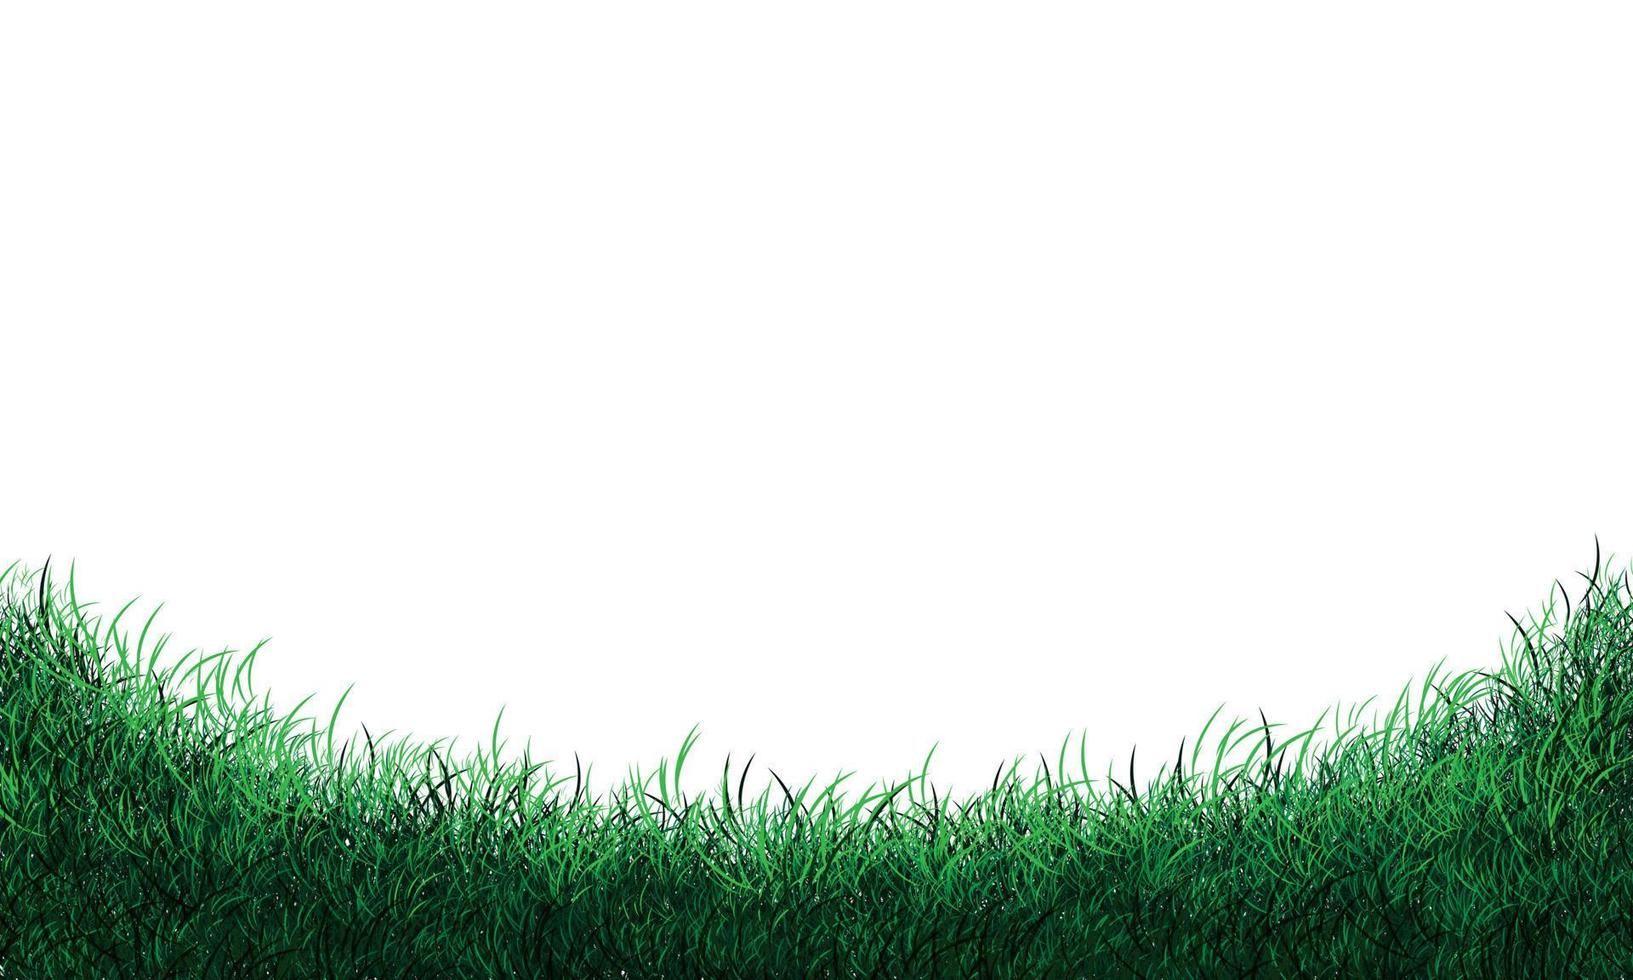 realistische grüne grasfeldkurve auf weißem hintergrundvektor vektor